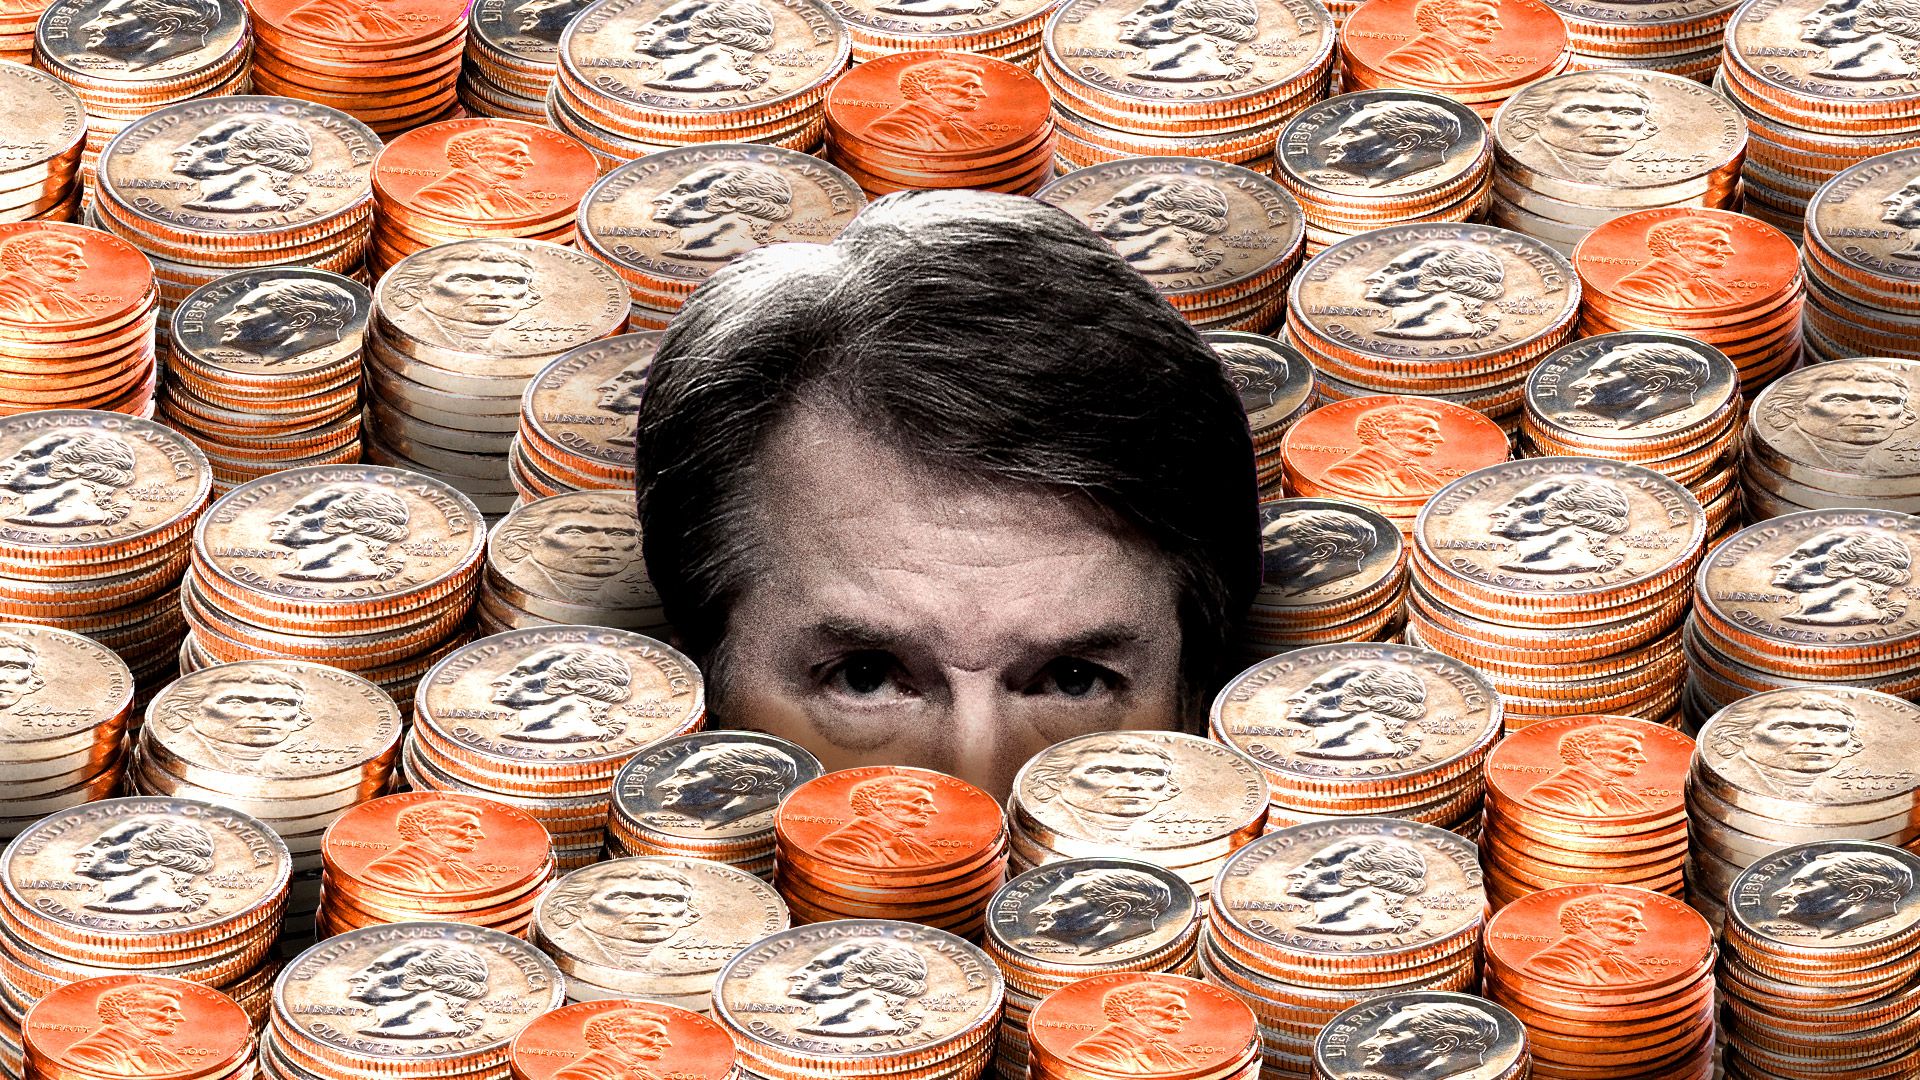 Brett Kavanaugh submerged in coins